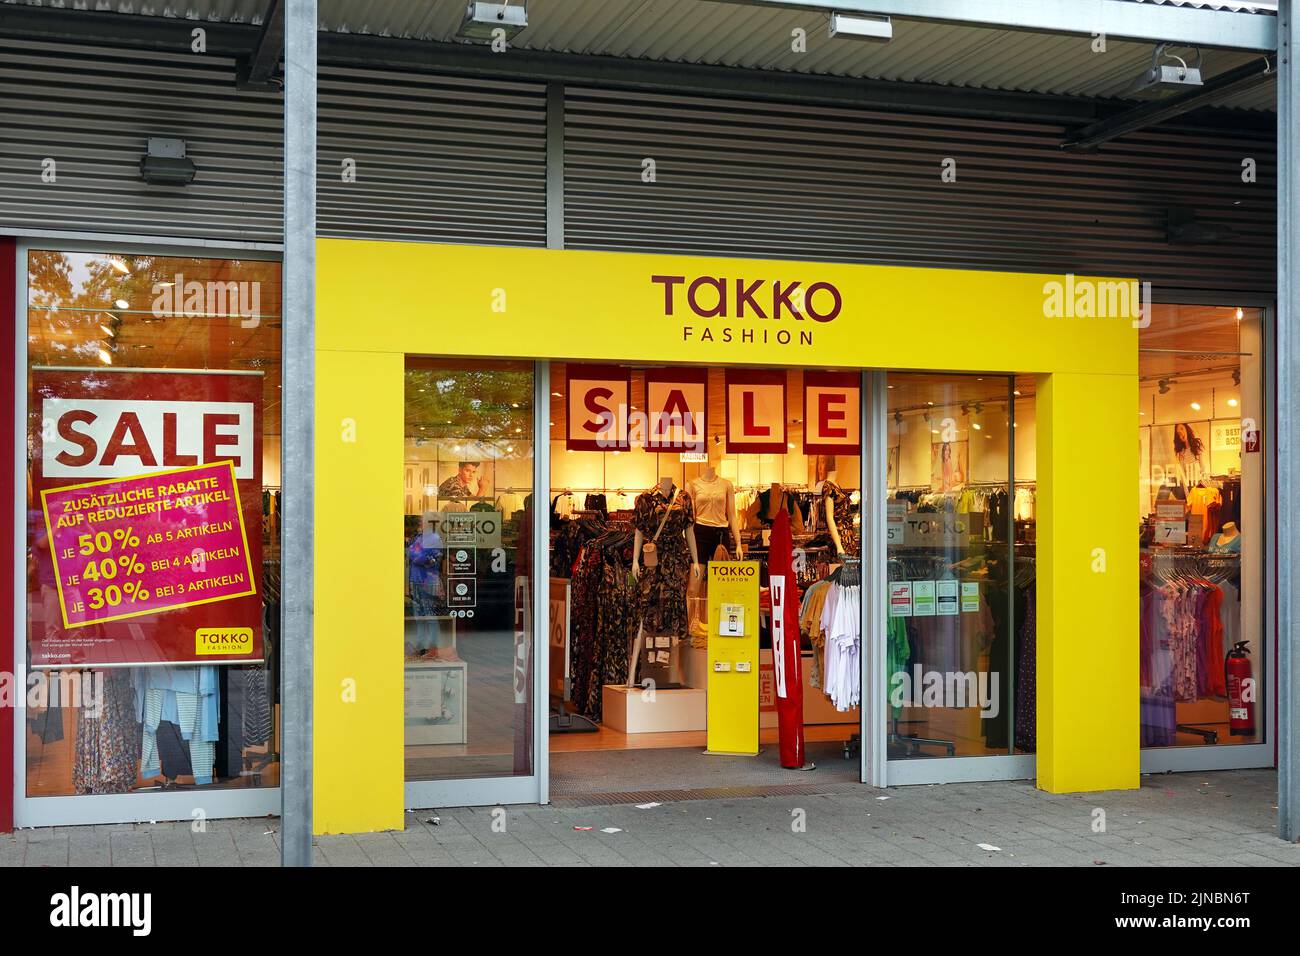 Venta en una tienda de moda Takko Foto de stock